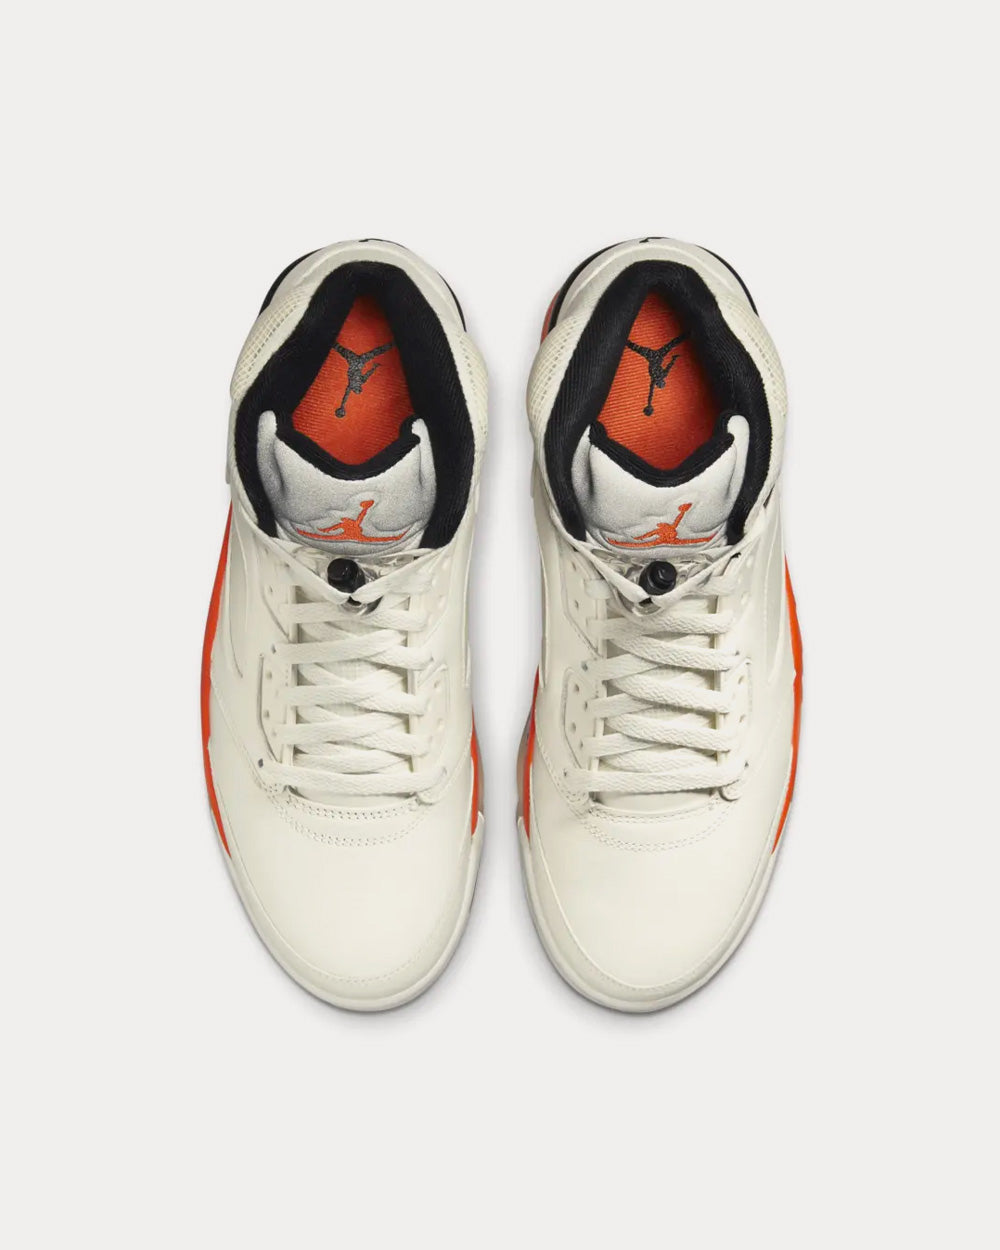 Jordan - Air Jordan 5 Orange Blaze High Top Sneakers